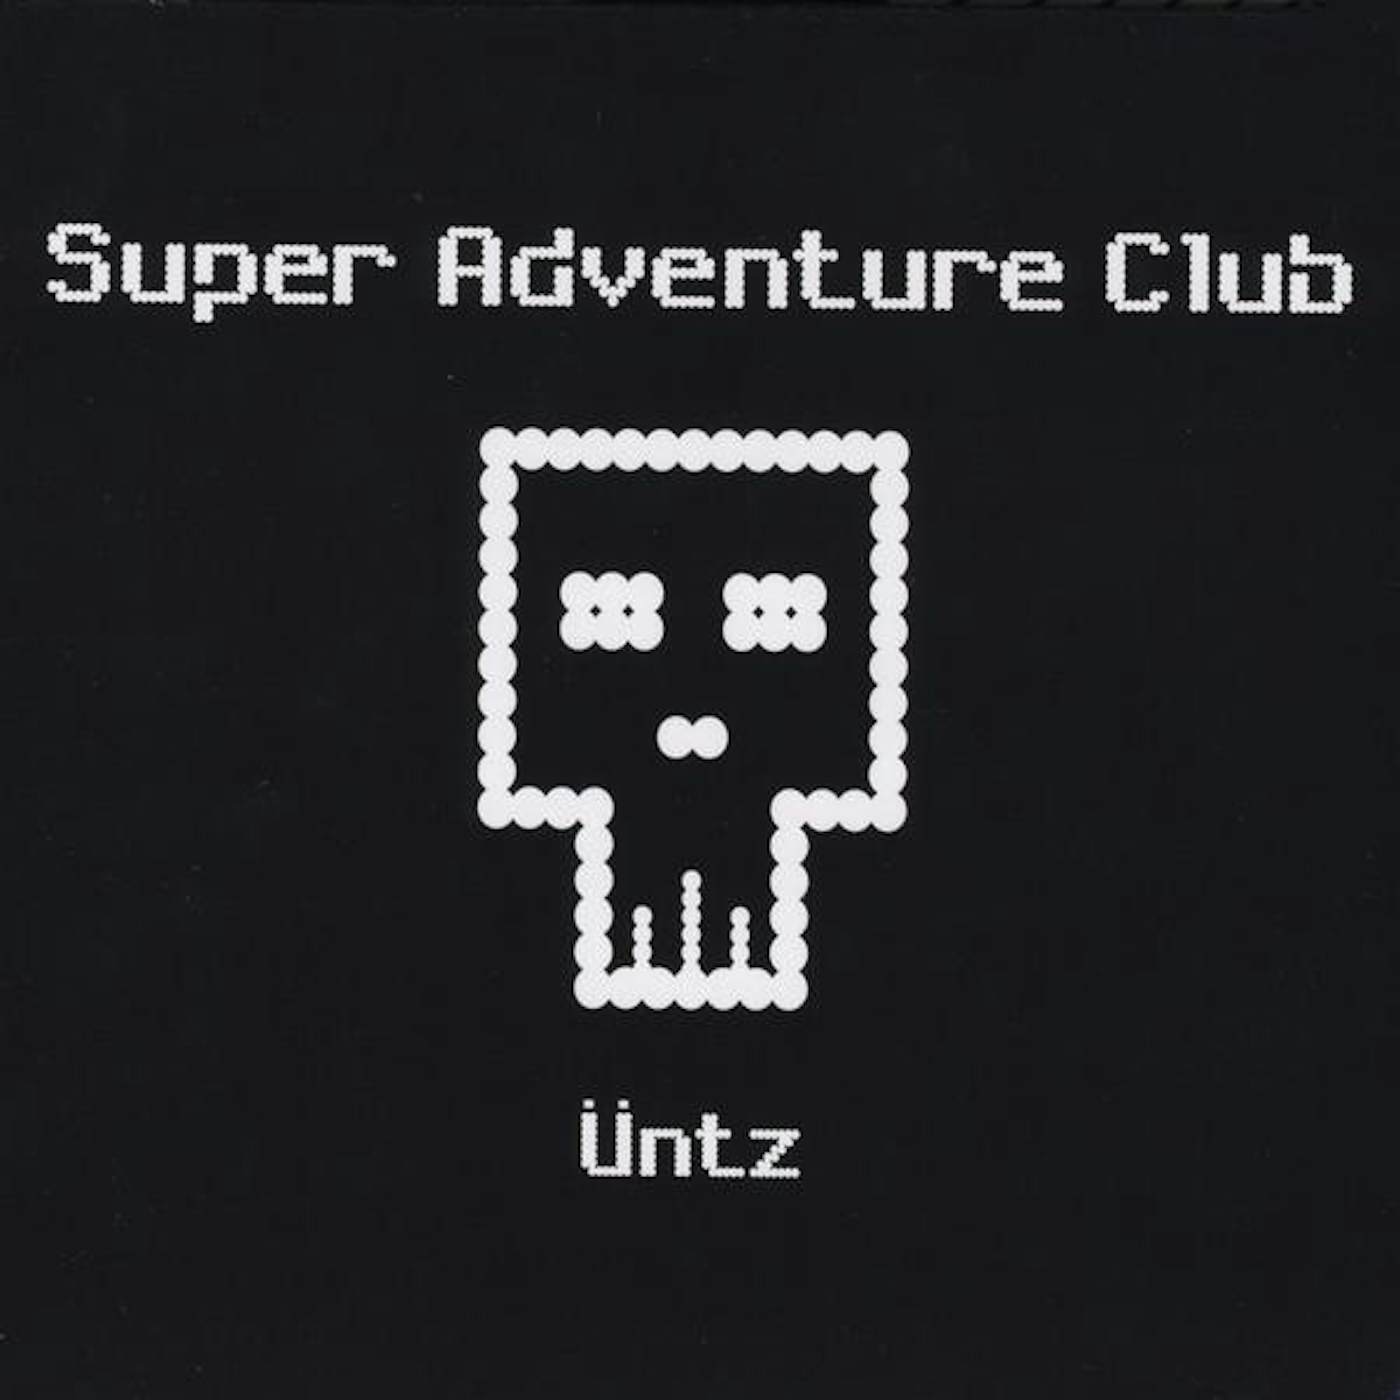 Super Adventure Club ANTZ CD